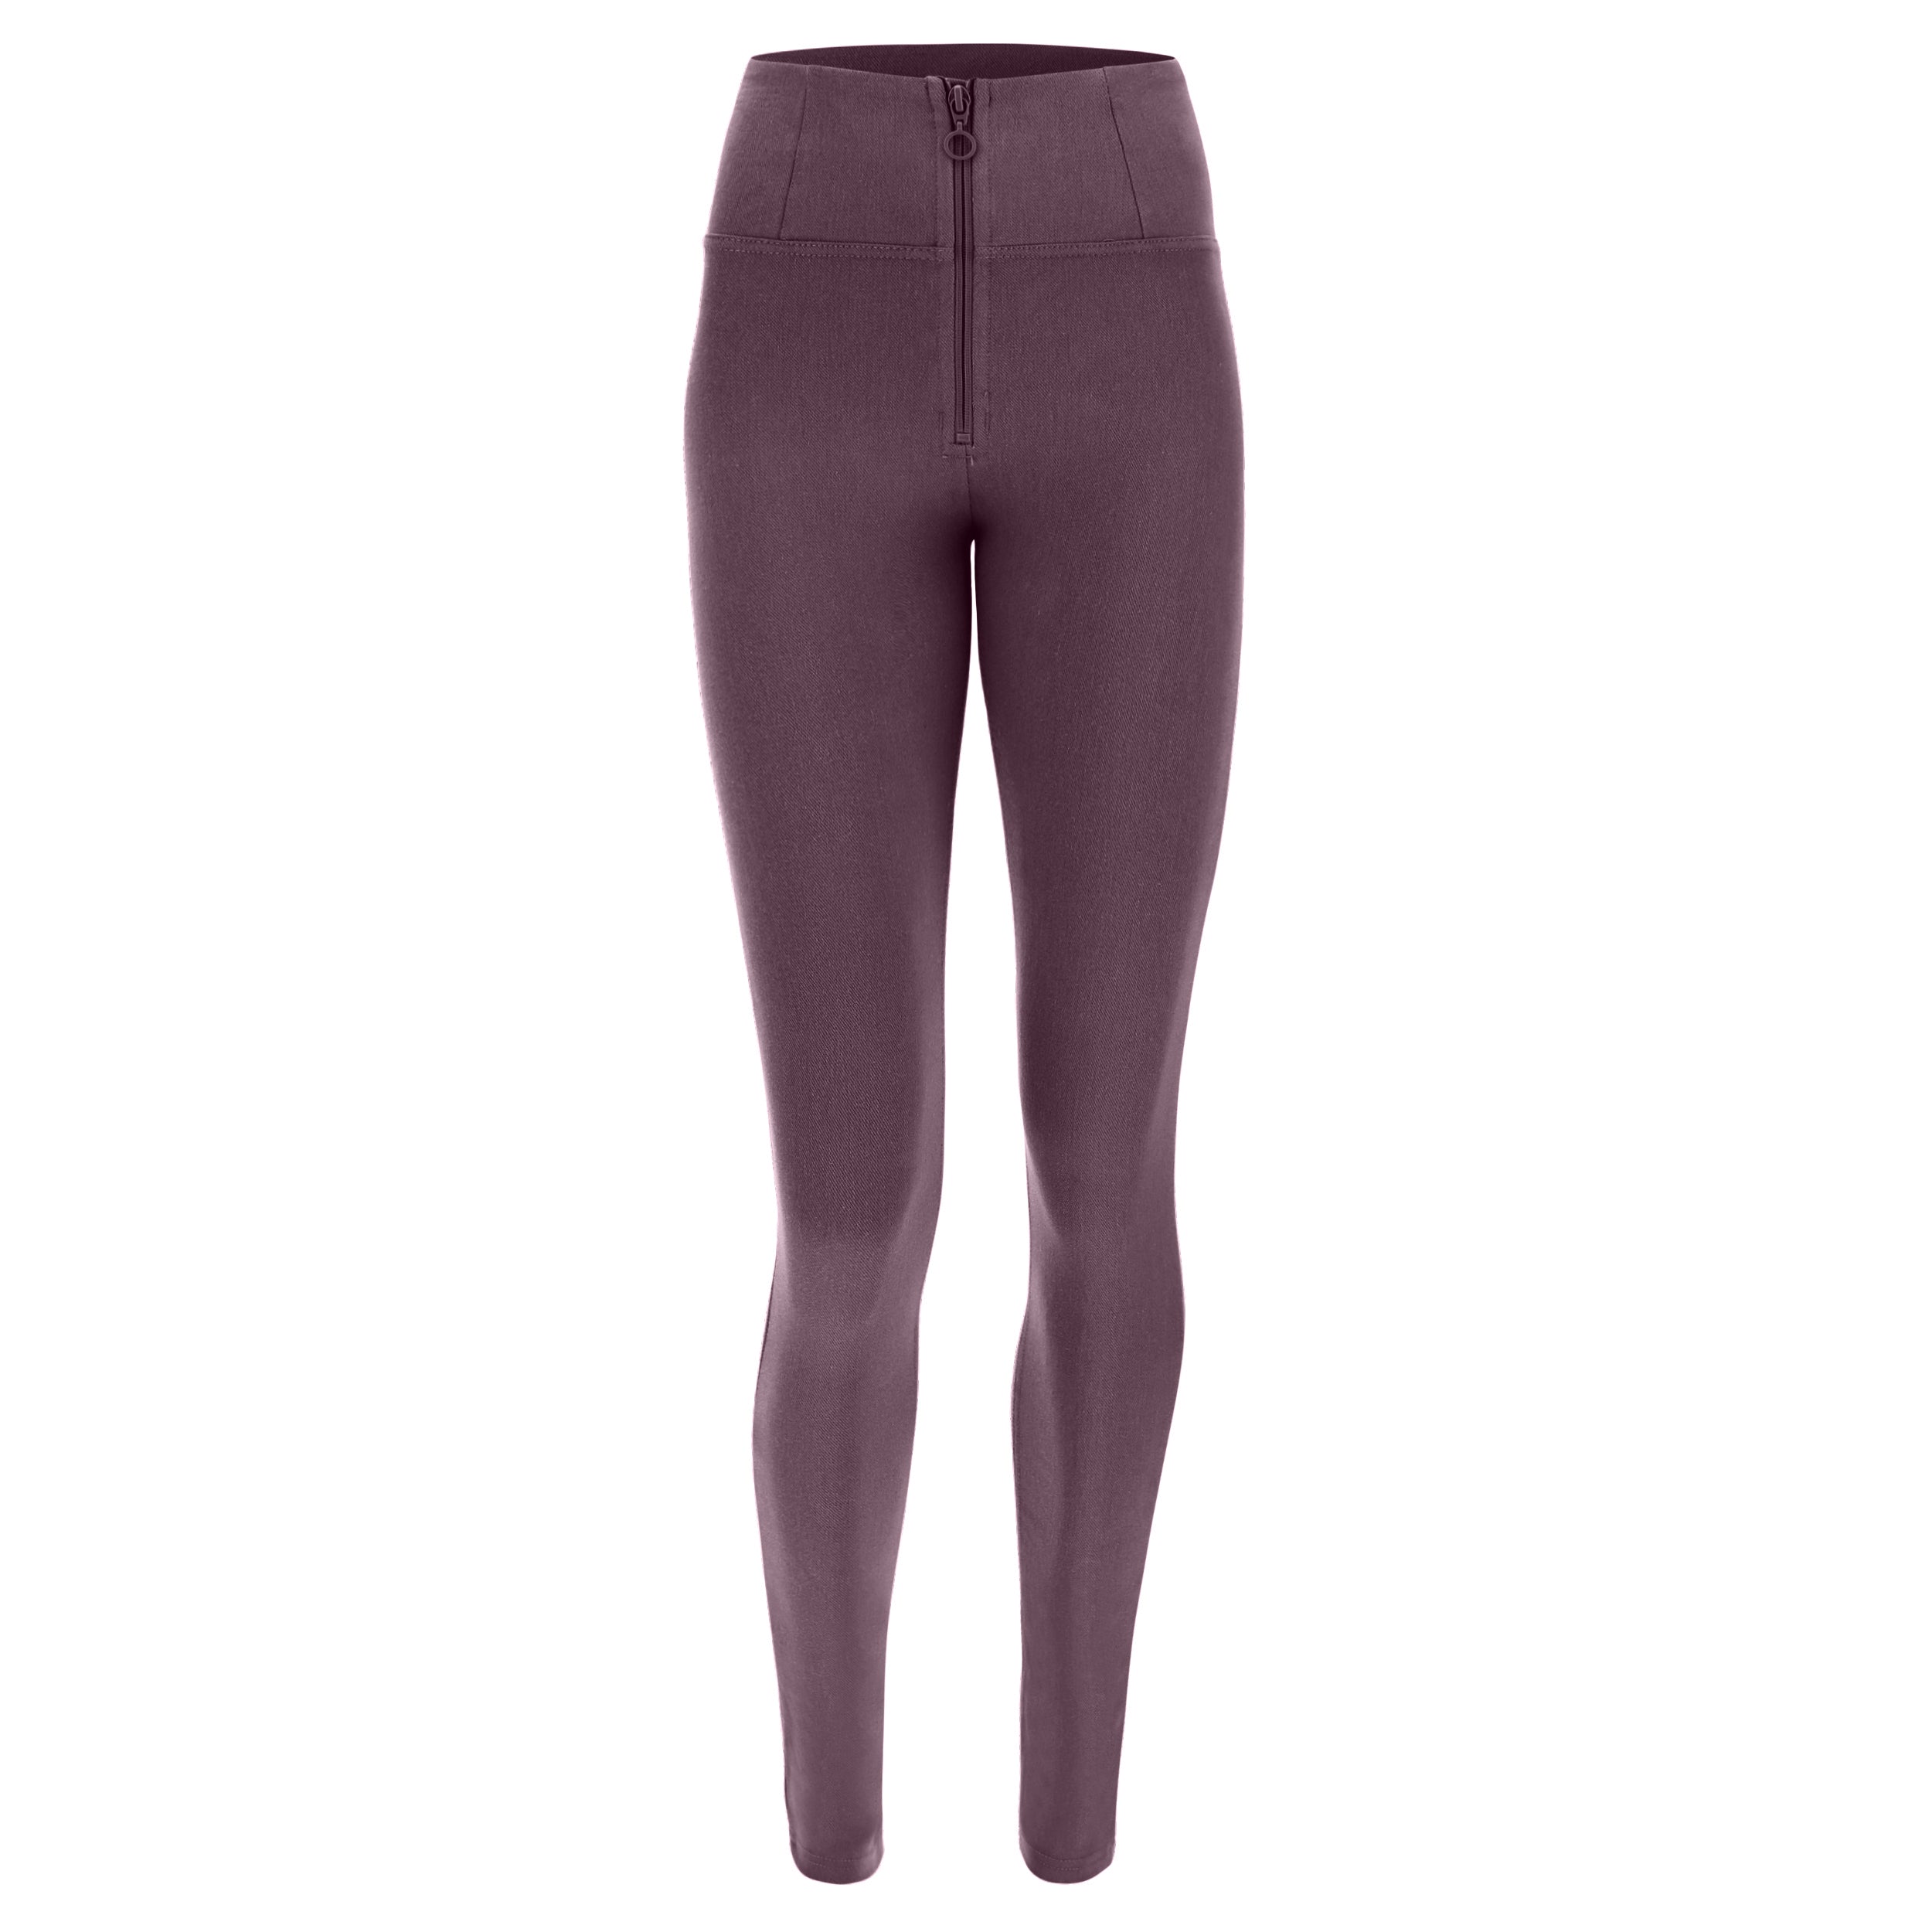 purple paars herfstkleur broek legging pants hoigh waist hoge taille wrup afslankend shape wear slim fit